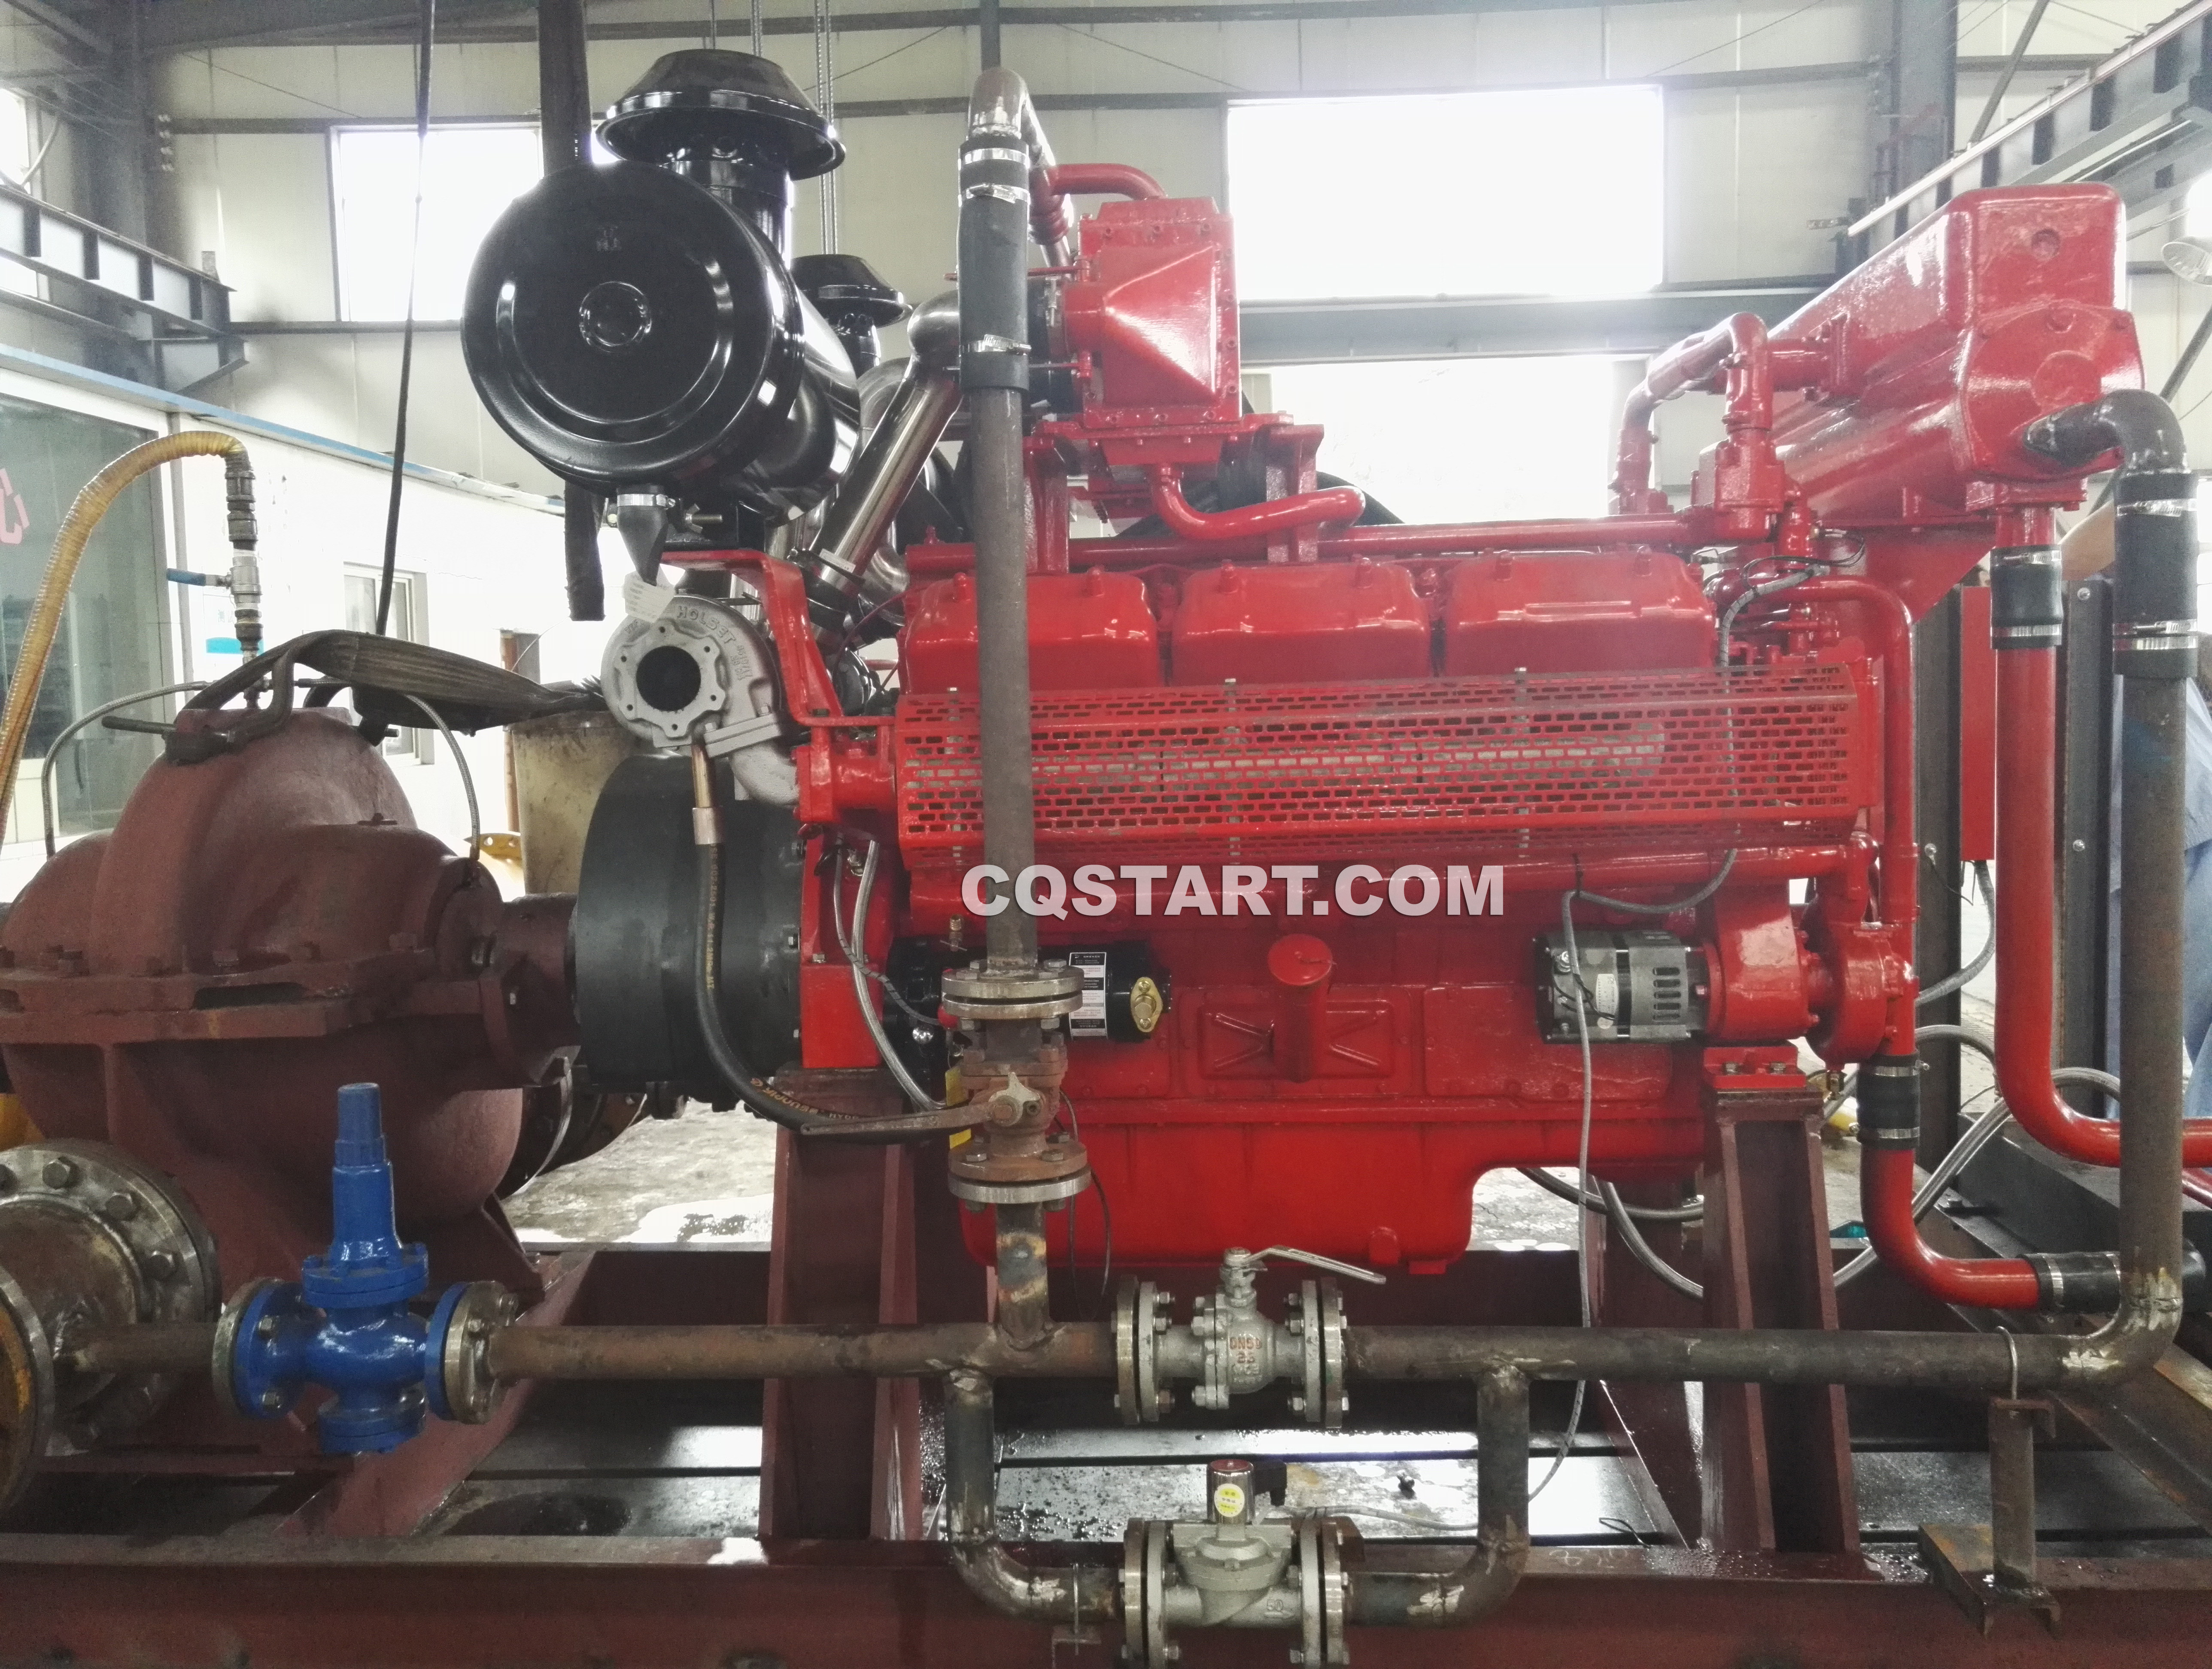 Cqstart spring starter for fire pumps